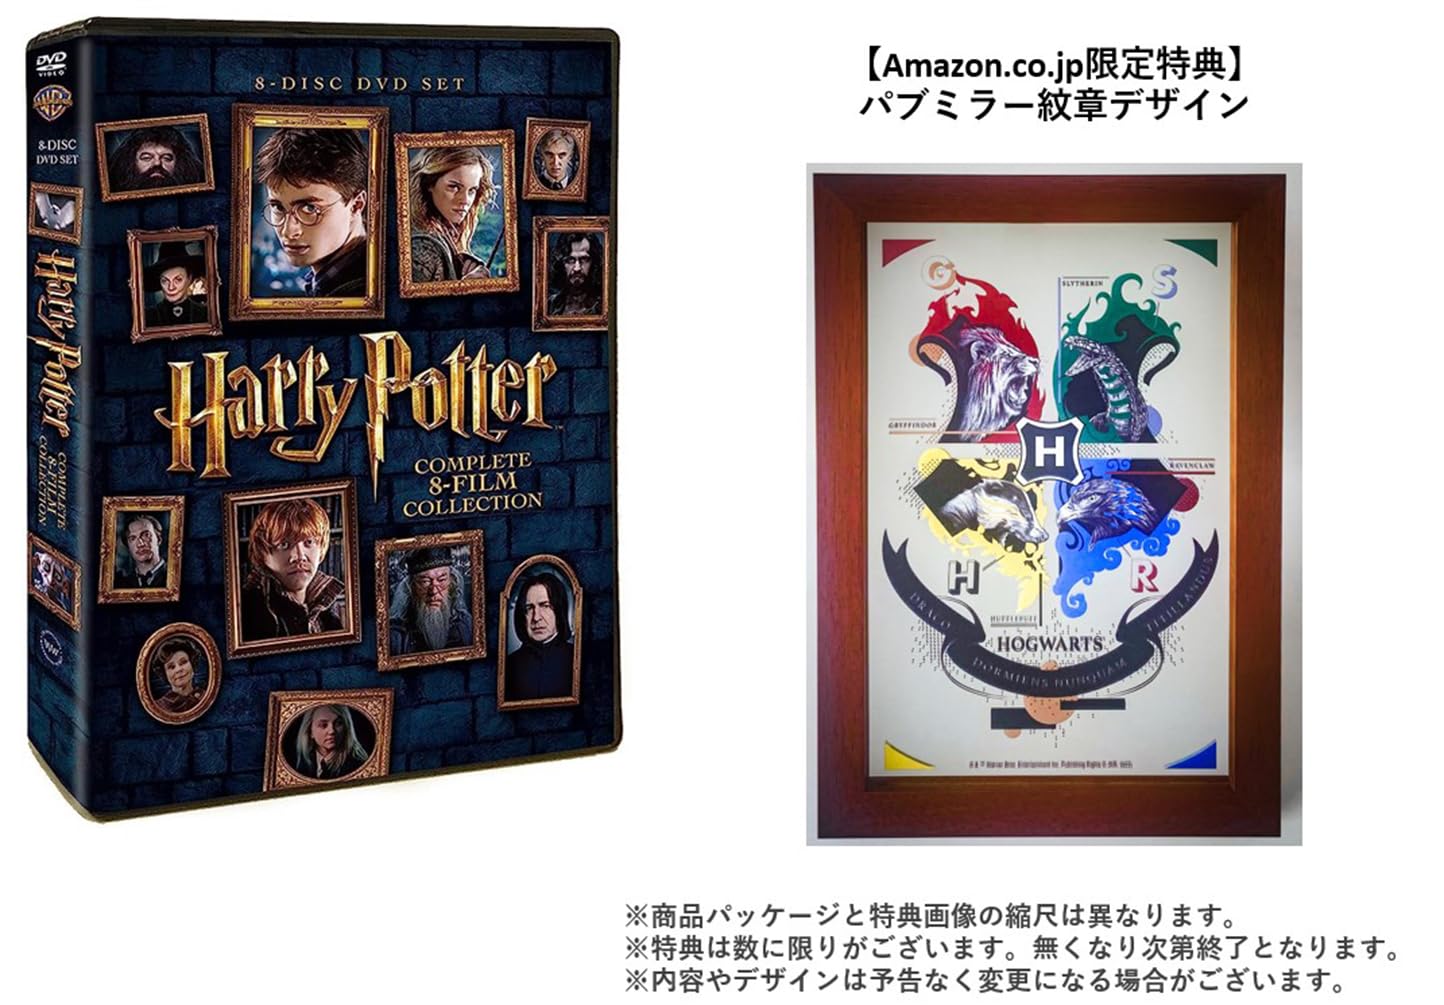 ハリー・ポッター 8-Film DVDセット (8枚組)「パブミラー紋章デザイン」付コレクション